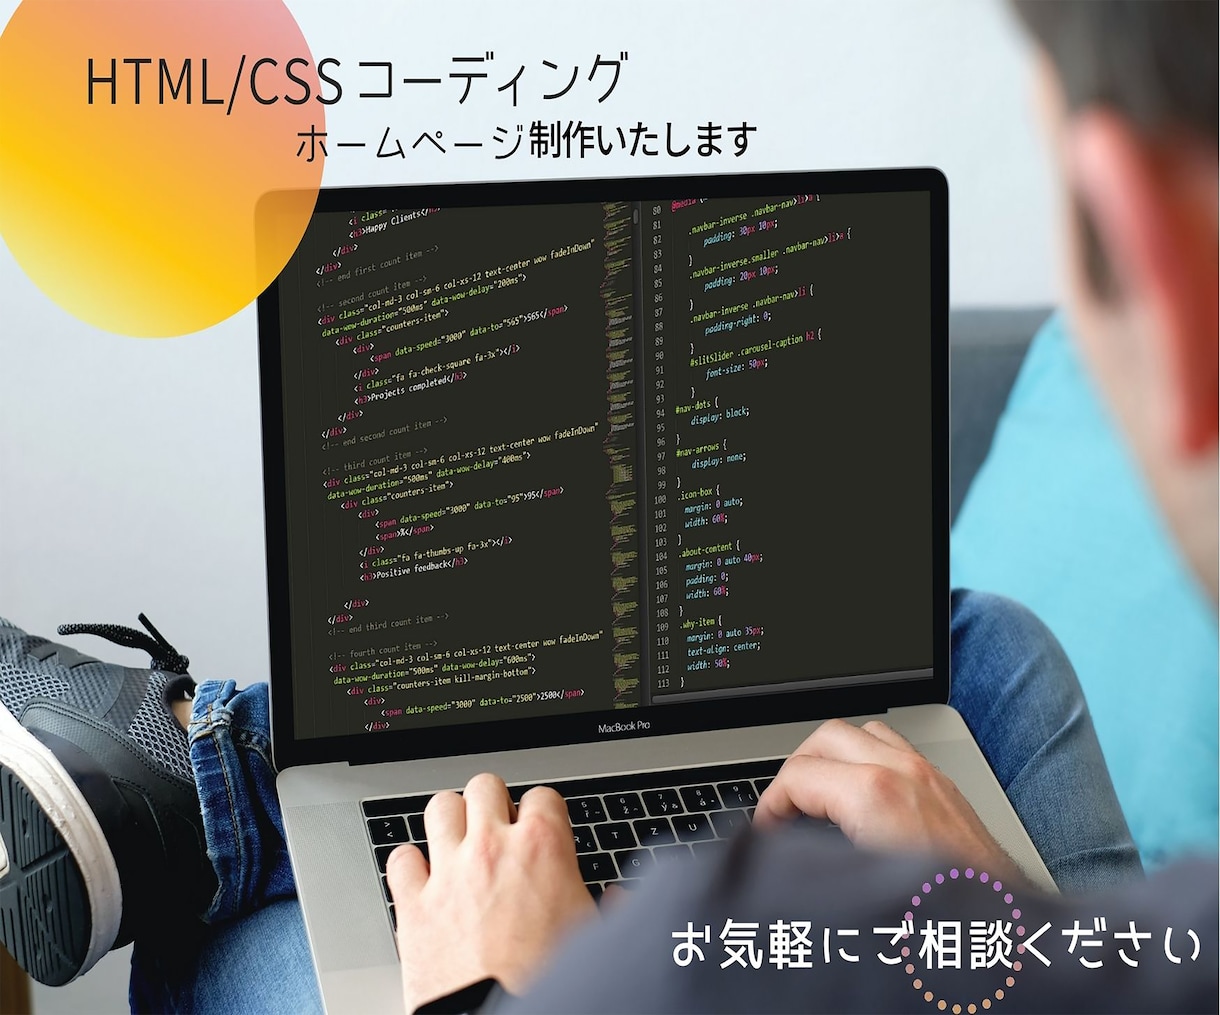 Webデザイン+HTML/CSSコードやります 丁寧にしっかりと形にすることを意識しています。 イメージ1